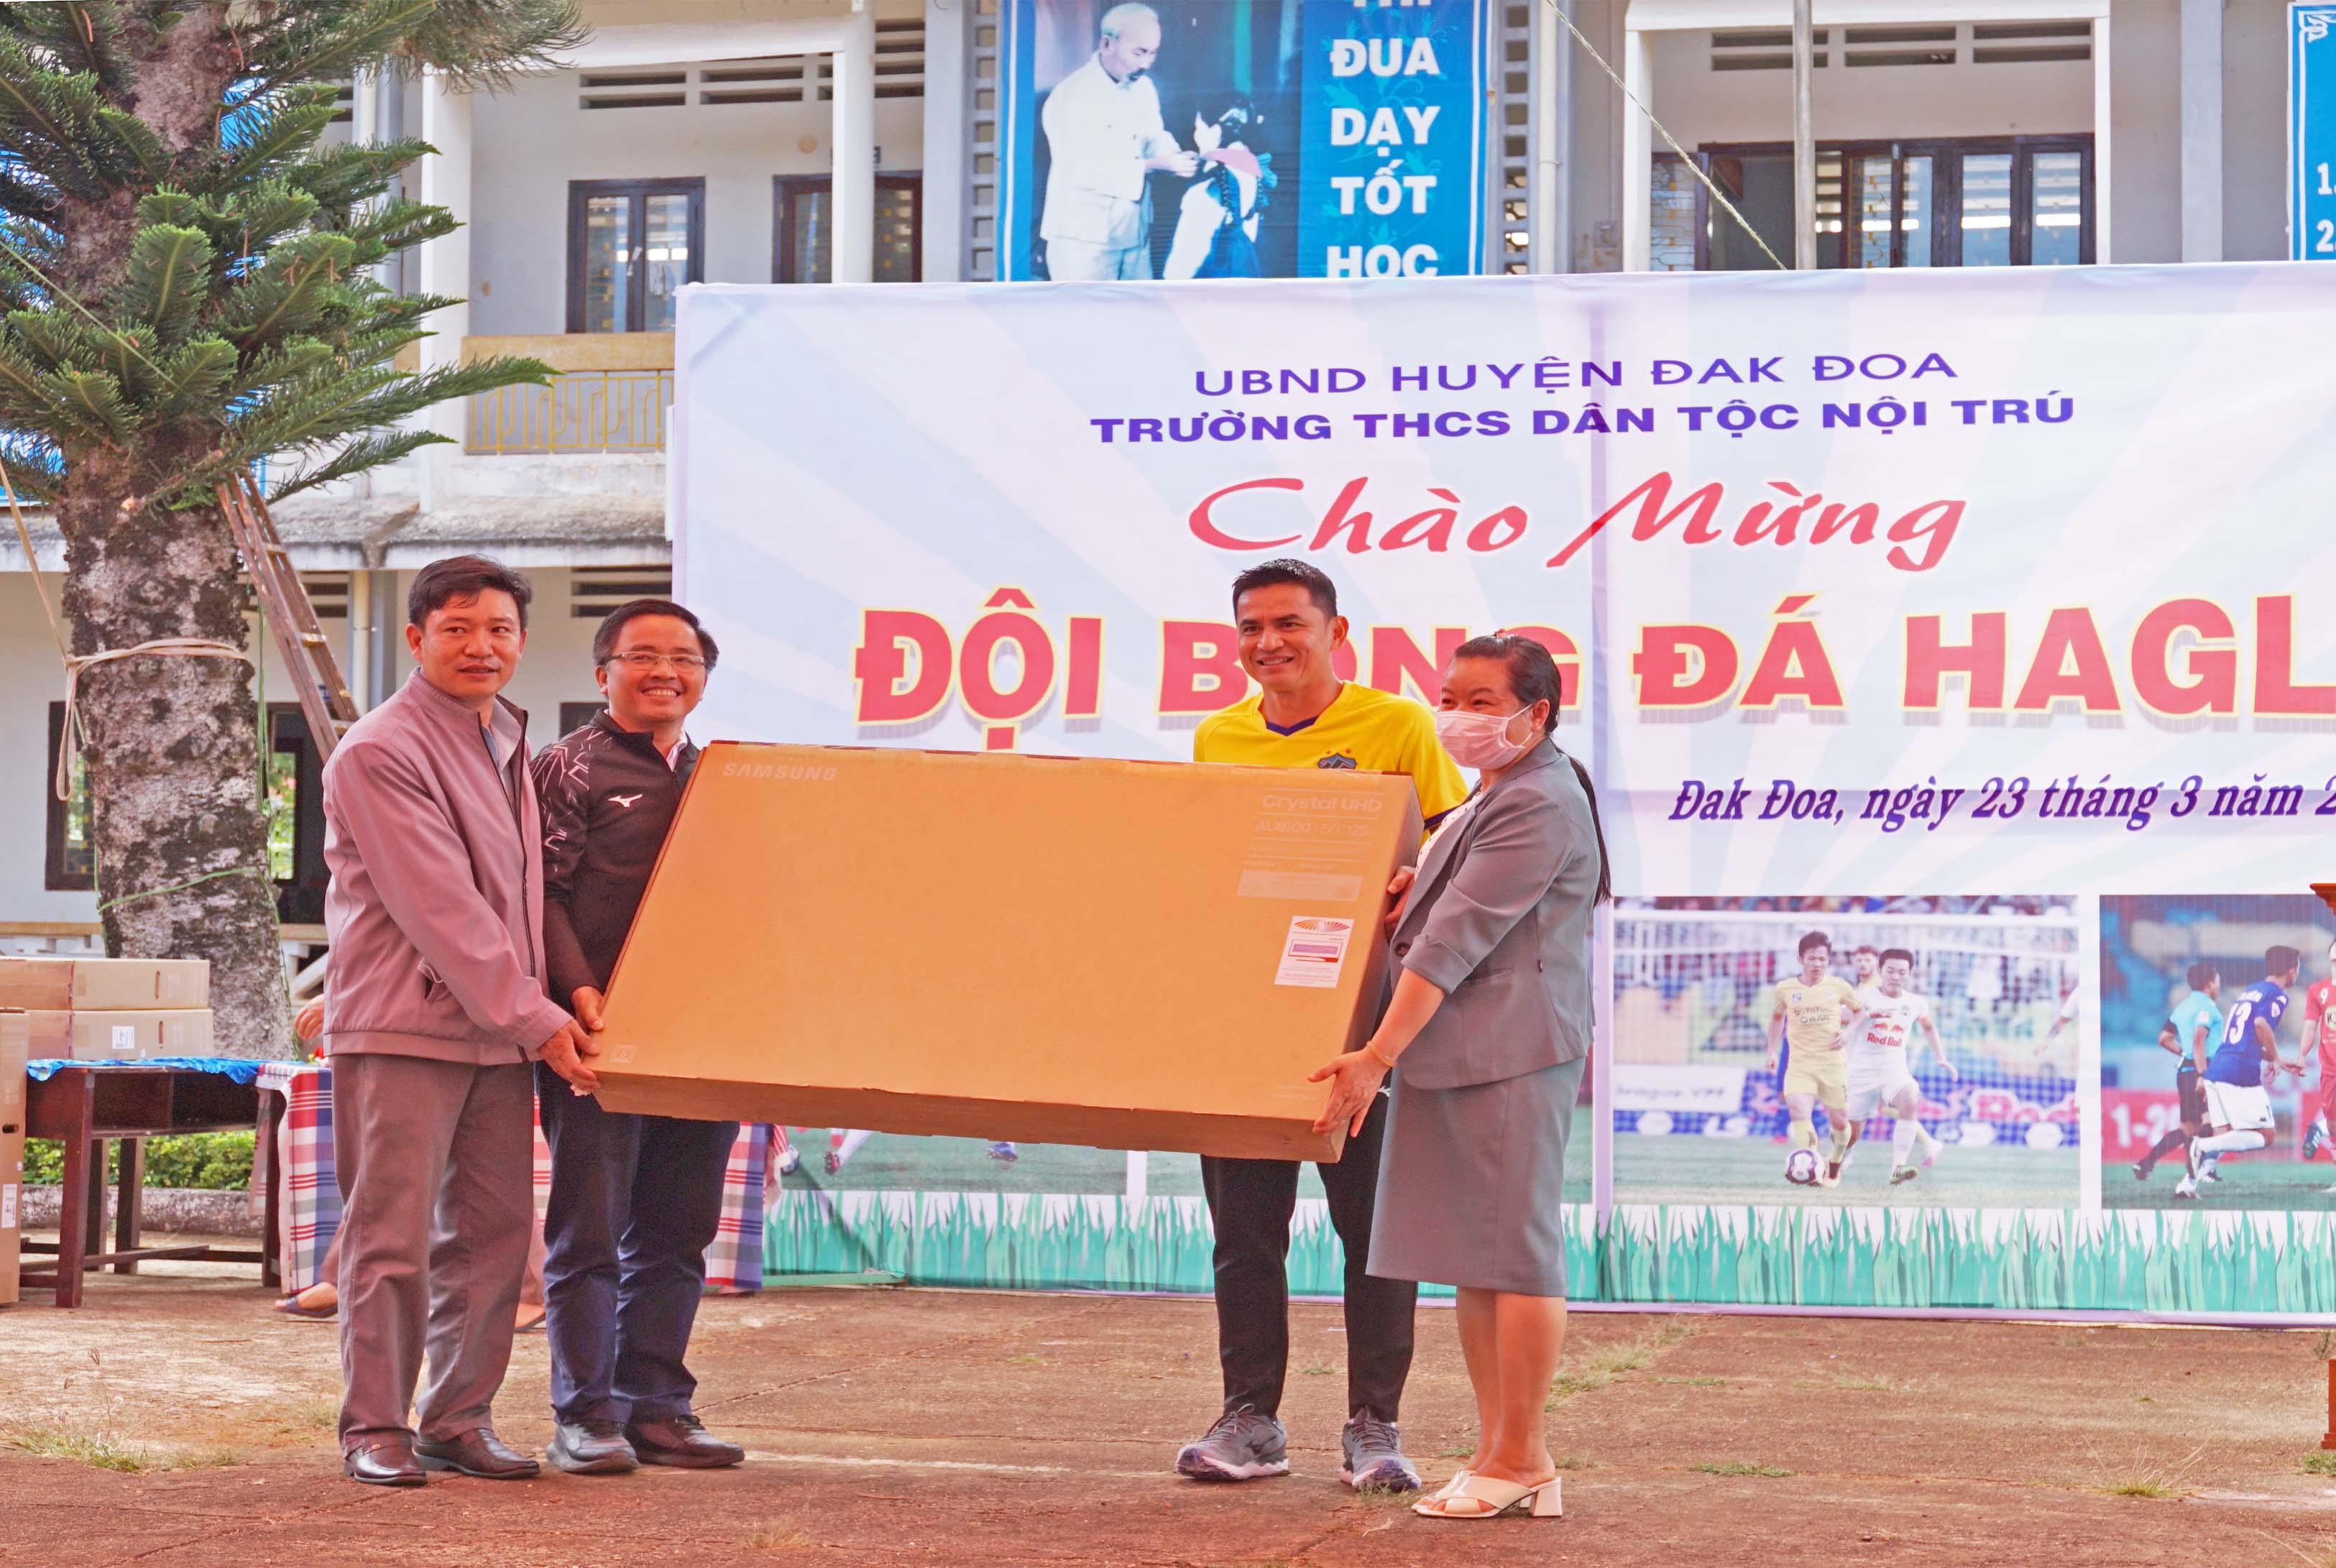 CLB bóng đá HAGL tặng 10 tivi cho Trường THCS Dân tộc nội trú huyện Đak Đoa. Ảnh: Nguyễn Tú 1